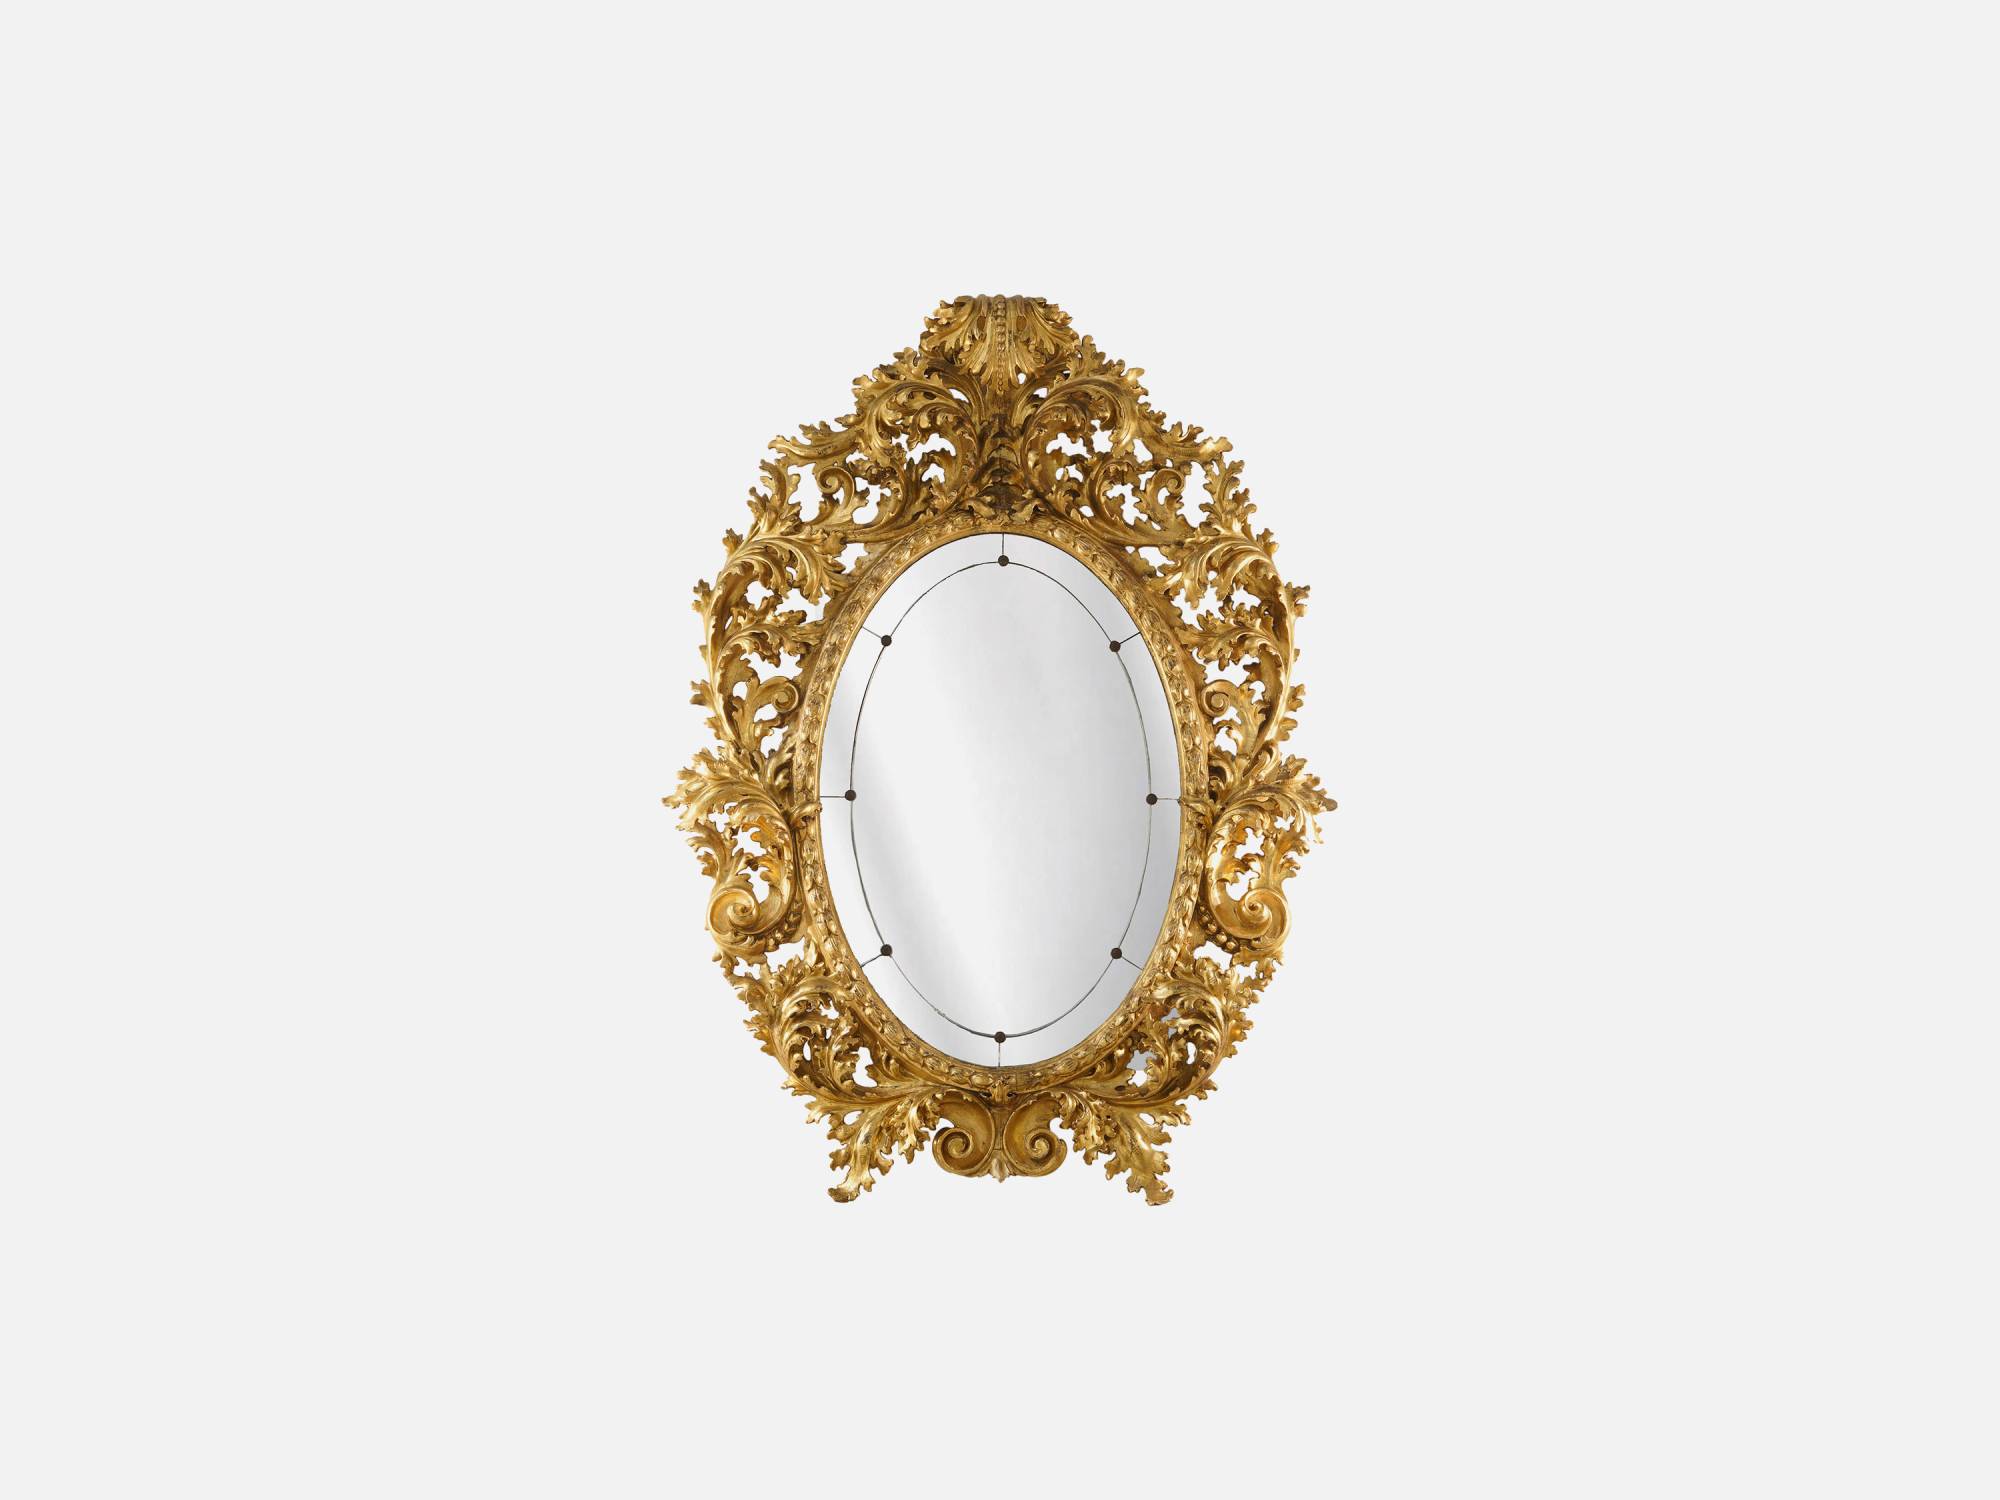 ART. 2197 – C.G. Capelletti Italian Luxury Classic Mirrorboards. Made in Italy classic interior design